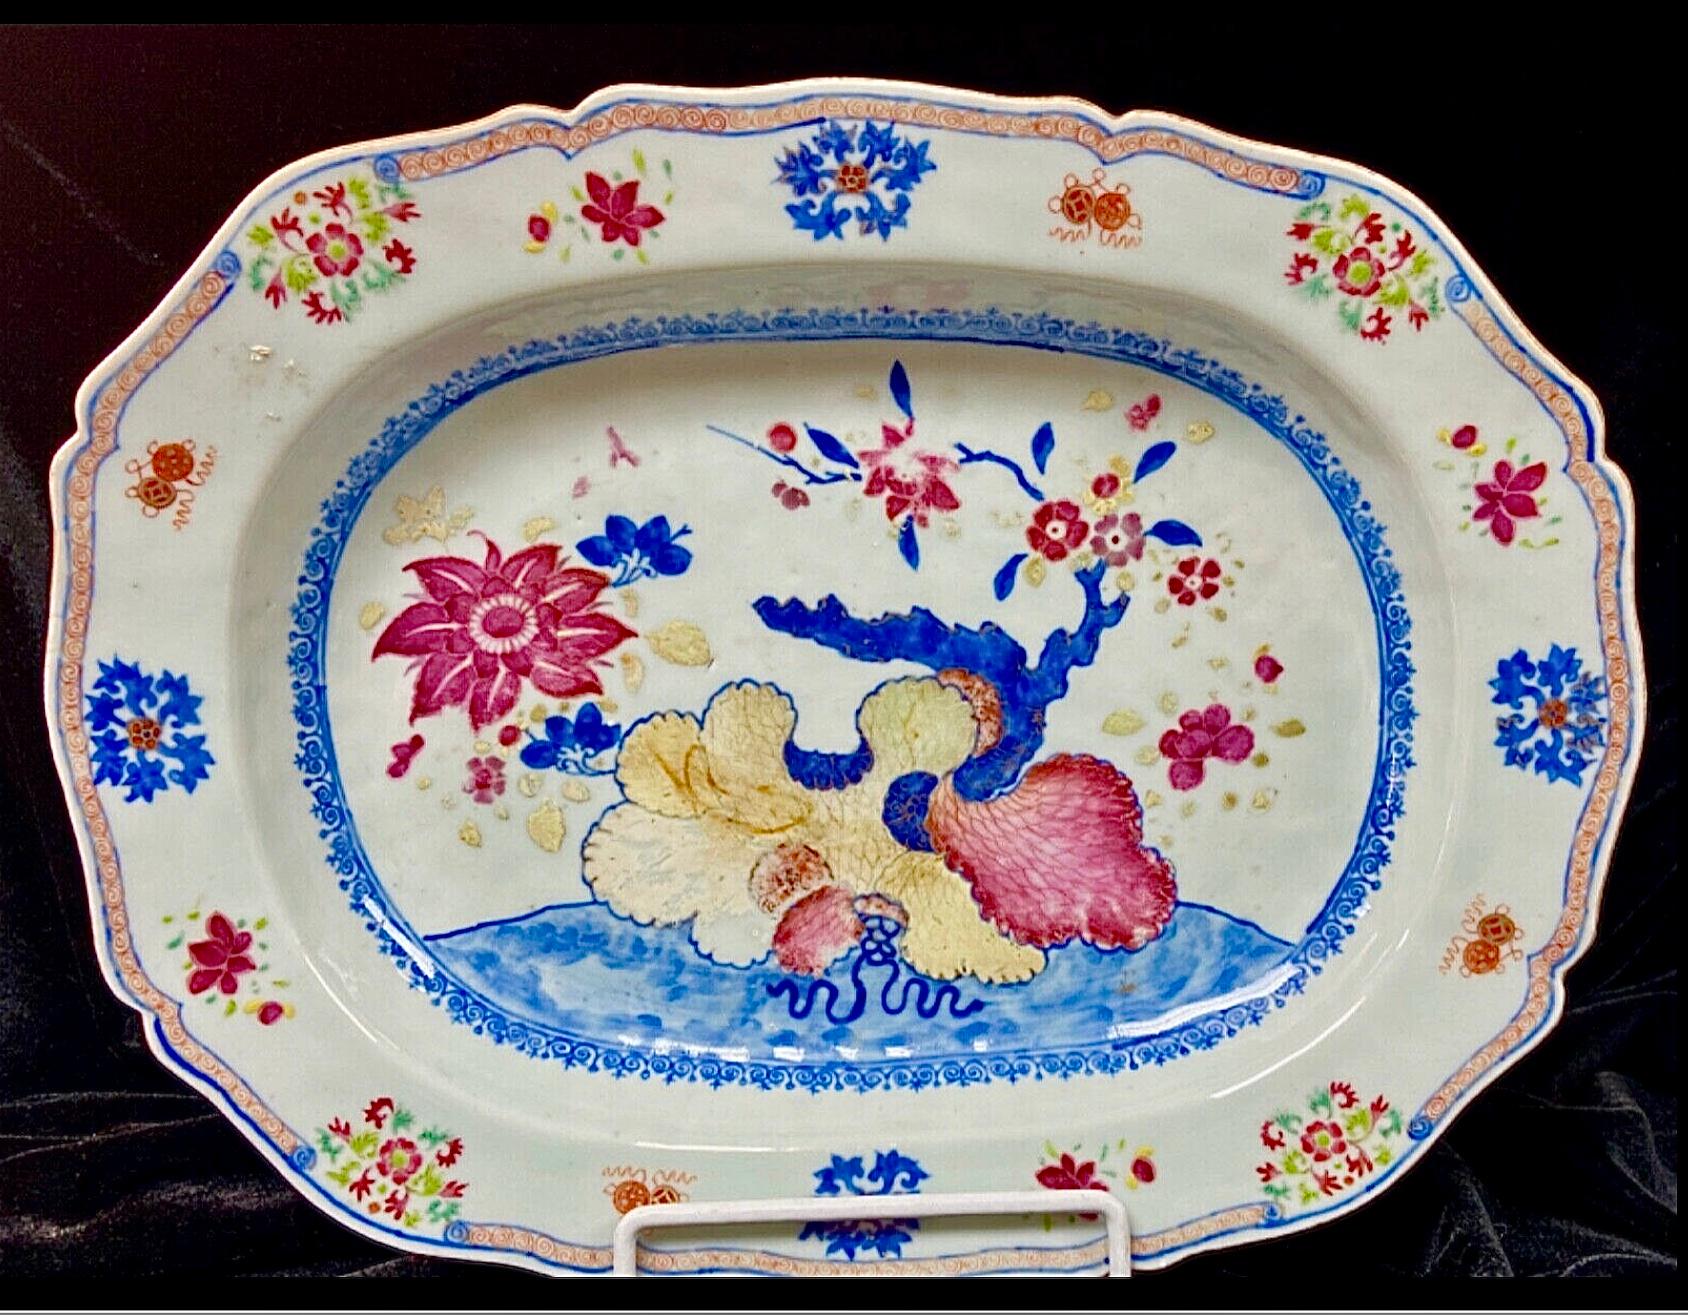 Un grand chargeur d'exportation chinoise de la famille rose avec des lotus roses et d'autres fleurs. Peint dans des couleurs vives et lumineuses de bleu, de rouge et de jaune.